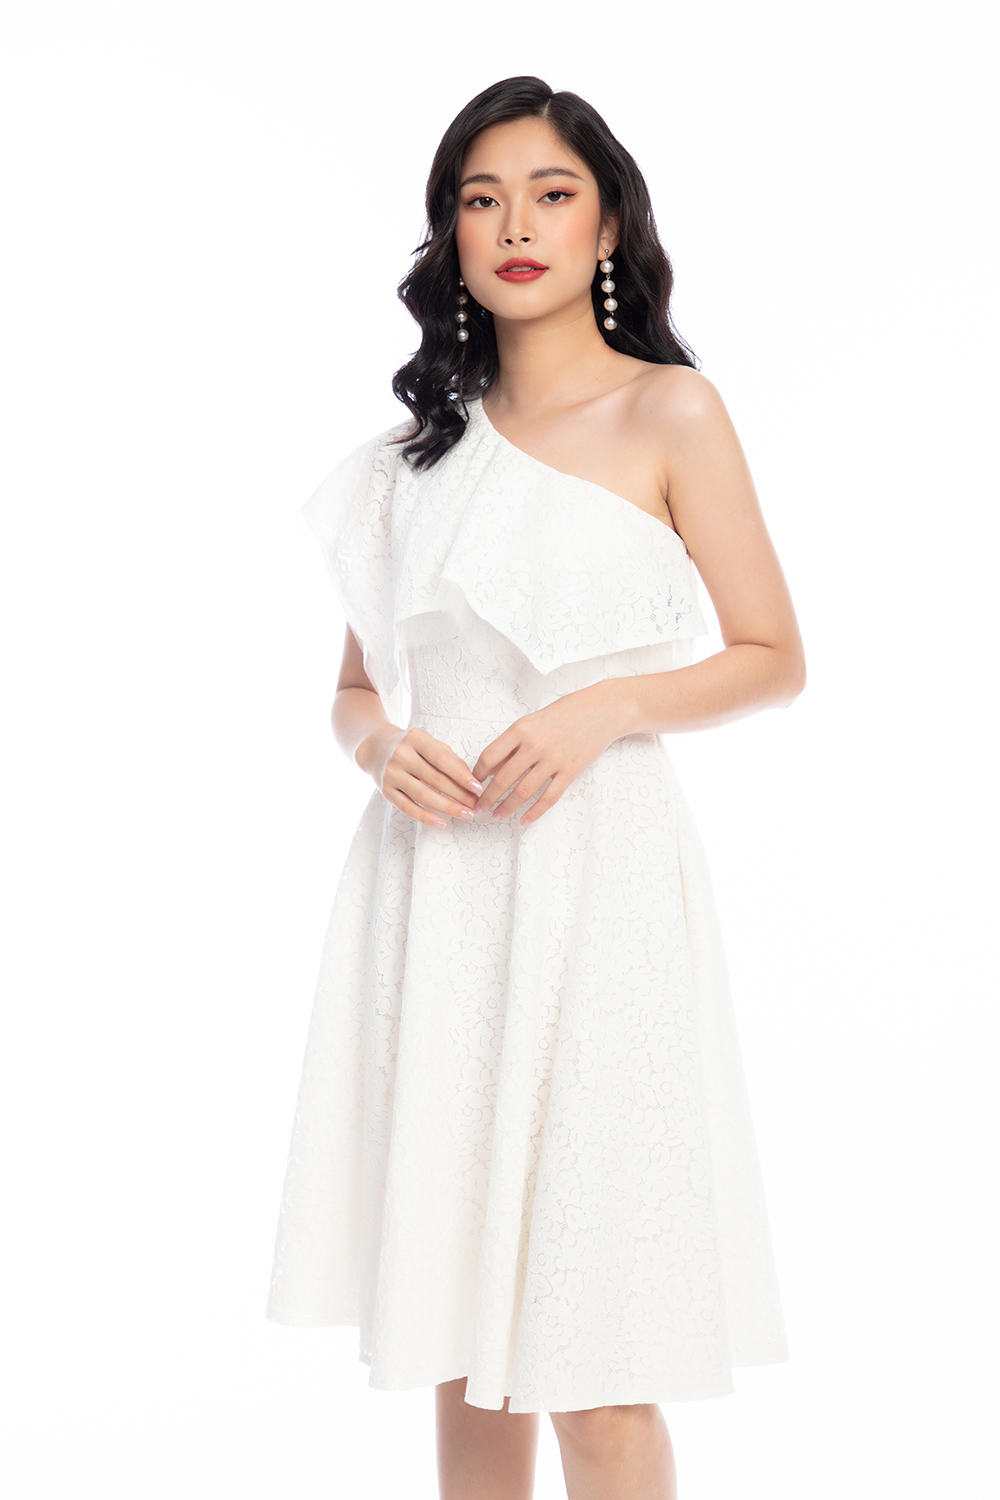 Đầm lệch vai dáng xòe màu trắng HL15-13 | Thời trang công sở K&K ...